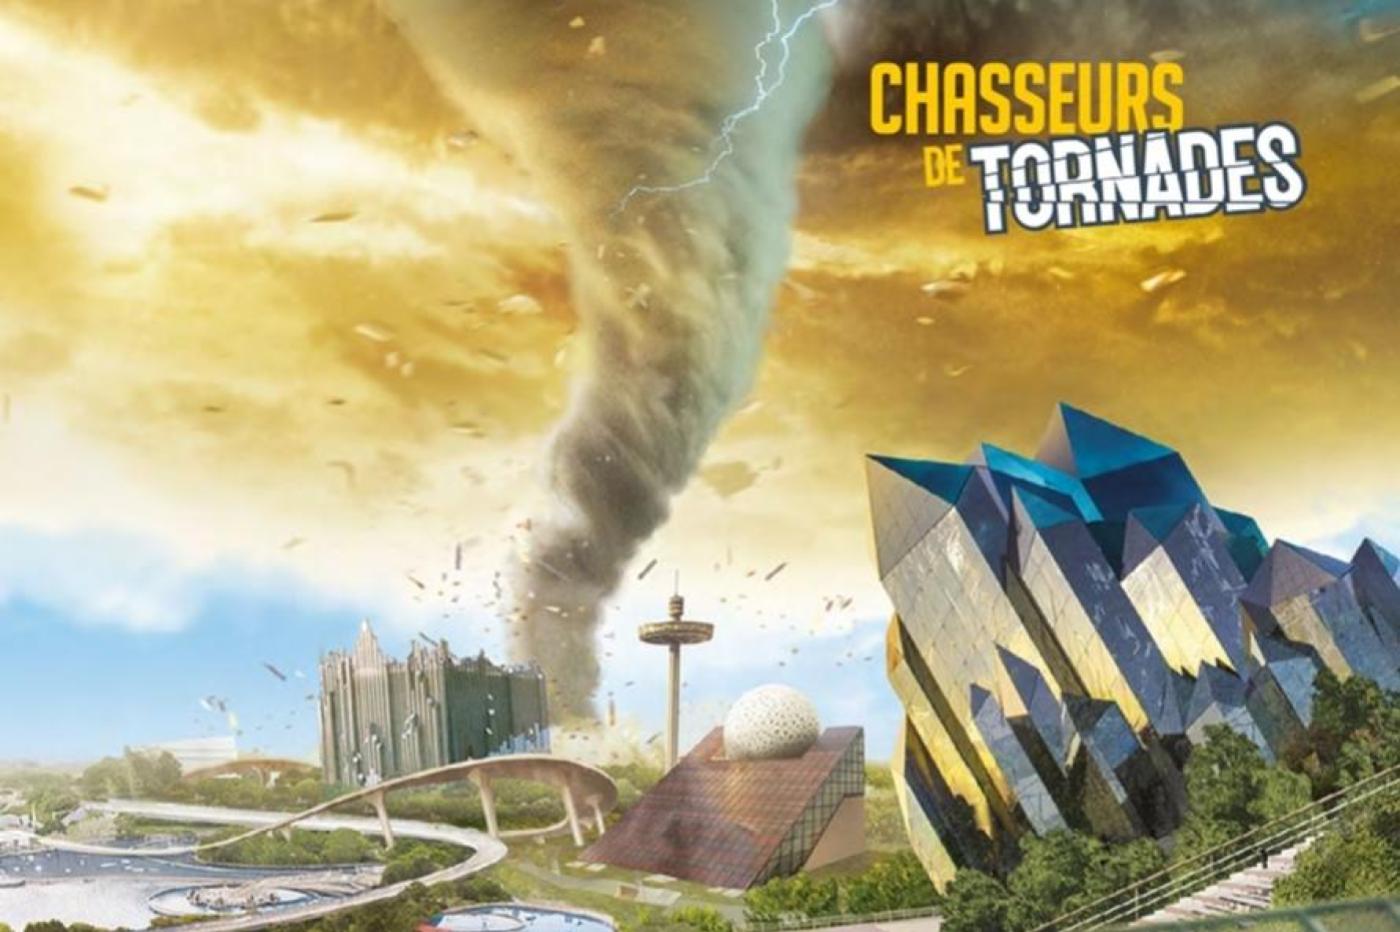 Image promotionnelle de l'attraction Chasseurs de Tornades montrant une tornade arrivant sur le parc